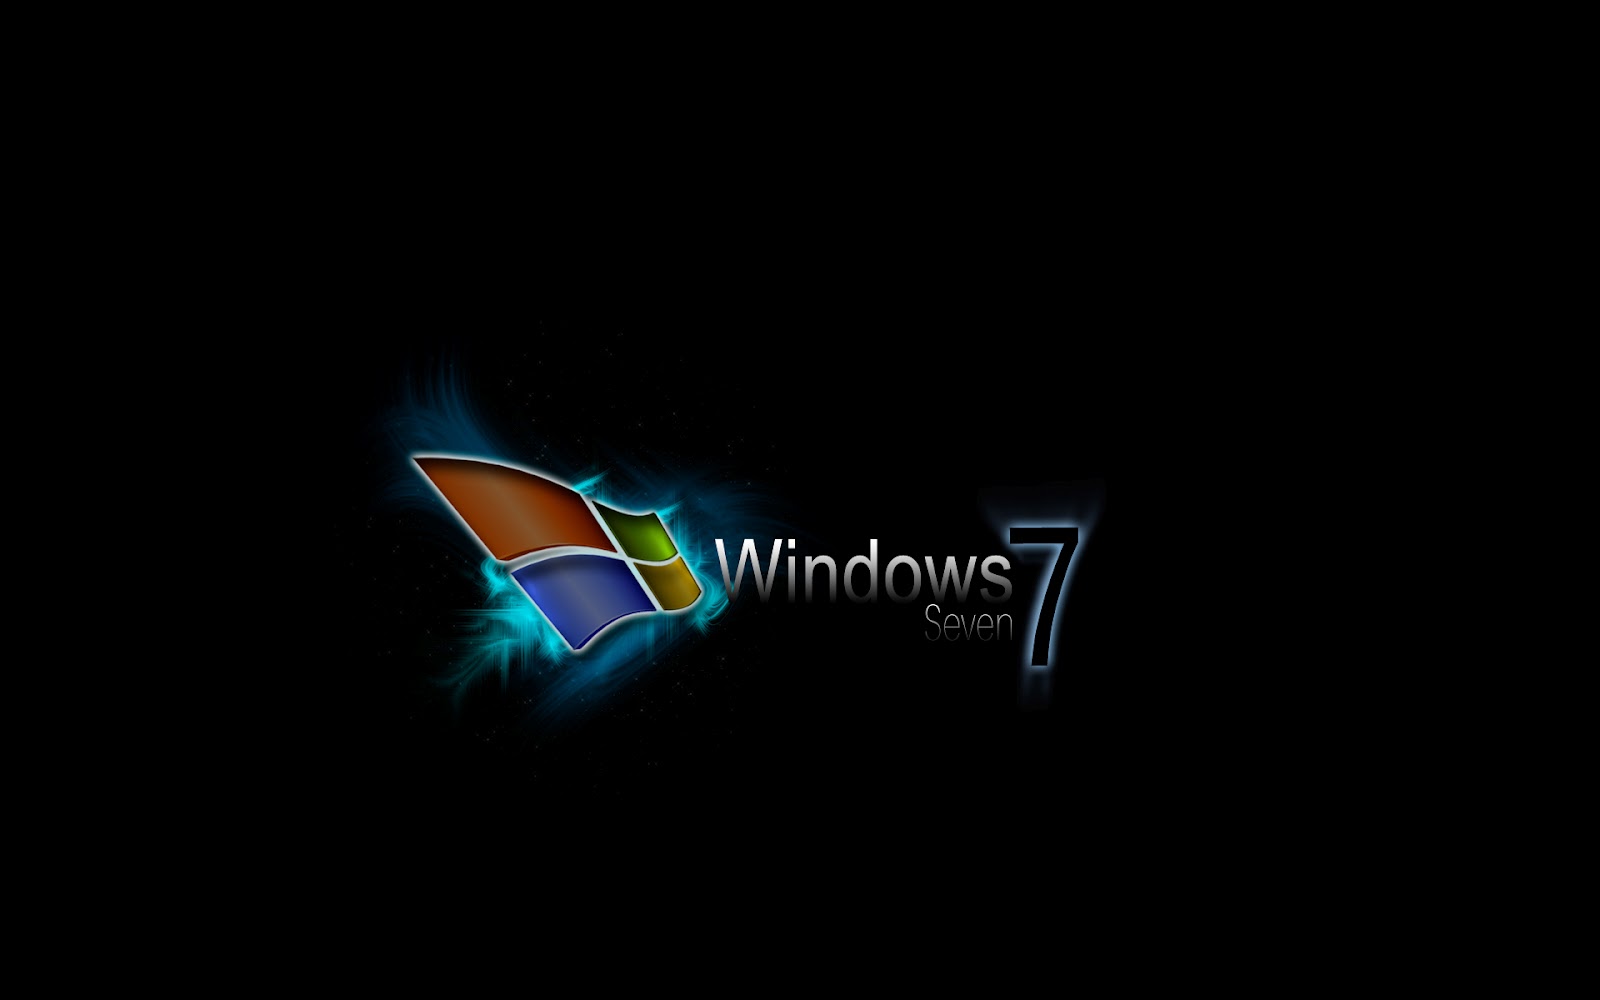 http://2.bp.blogspot.com/-lR24EOpYX-w/T9Du2epLGiI/AAAAAAAAAgk/cn-qUxRNWzY/s1600/windows-7-hd-wallpaper-3.jpg